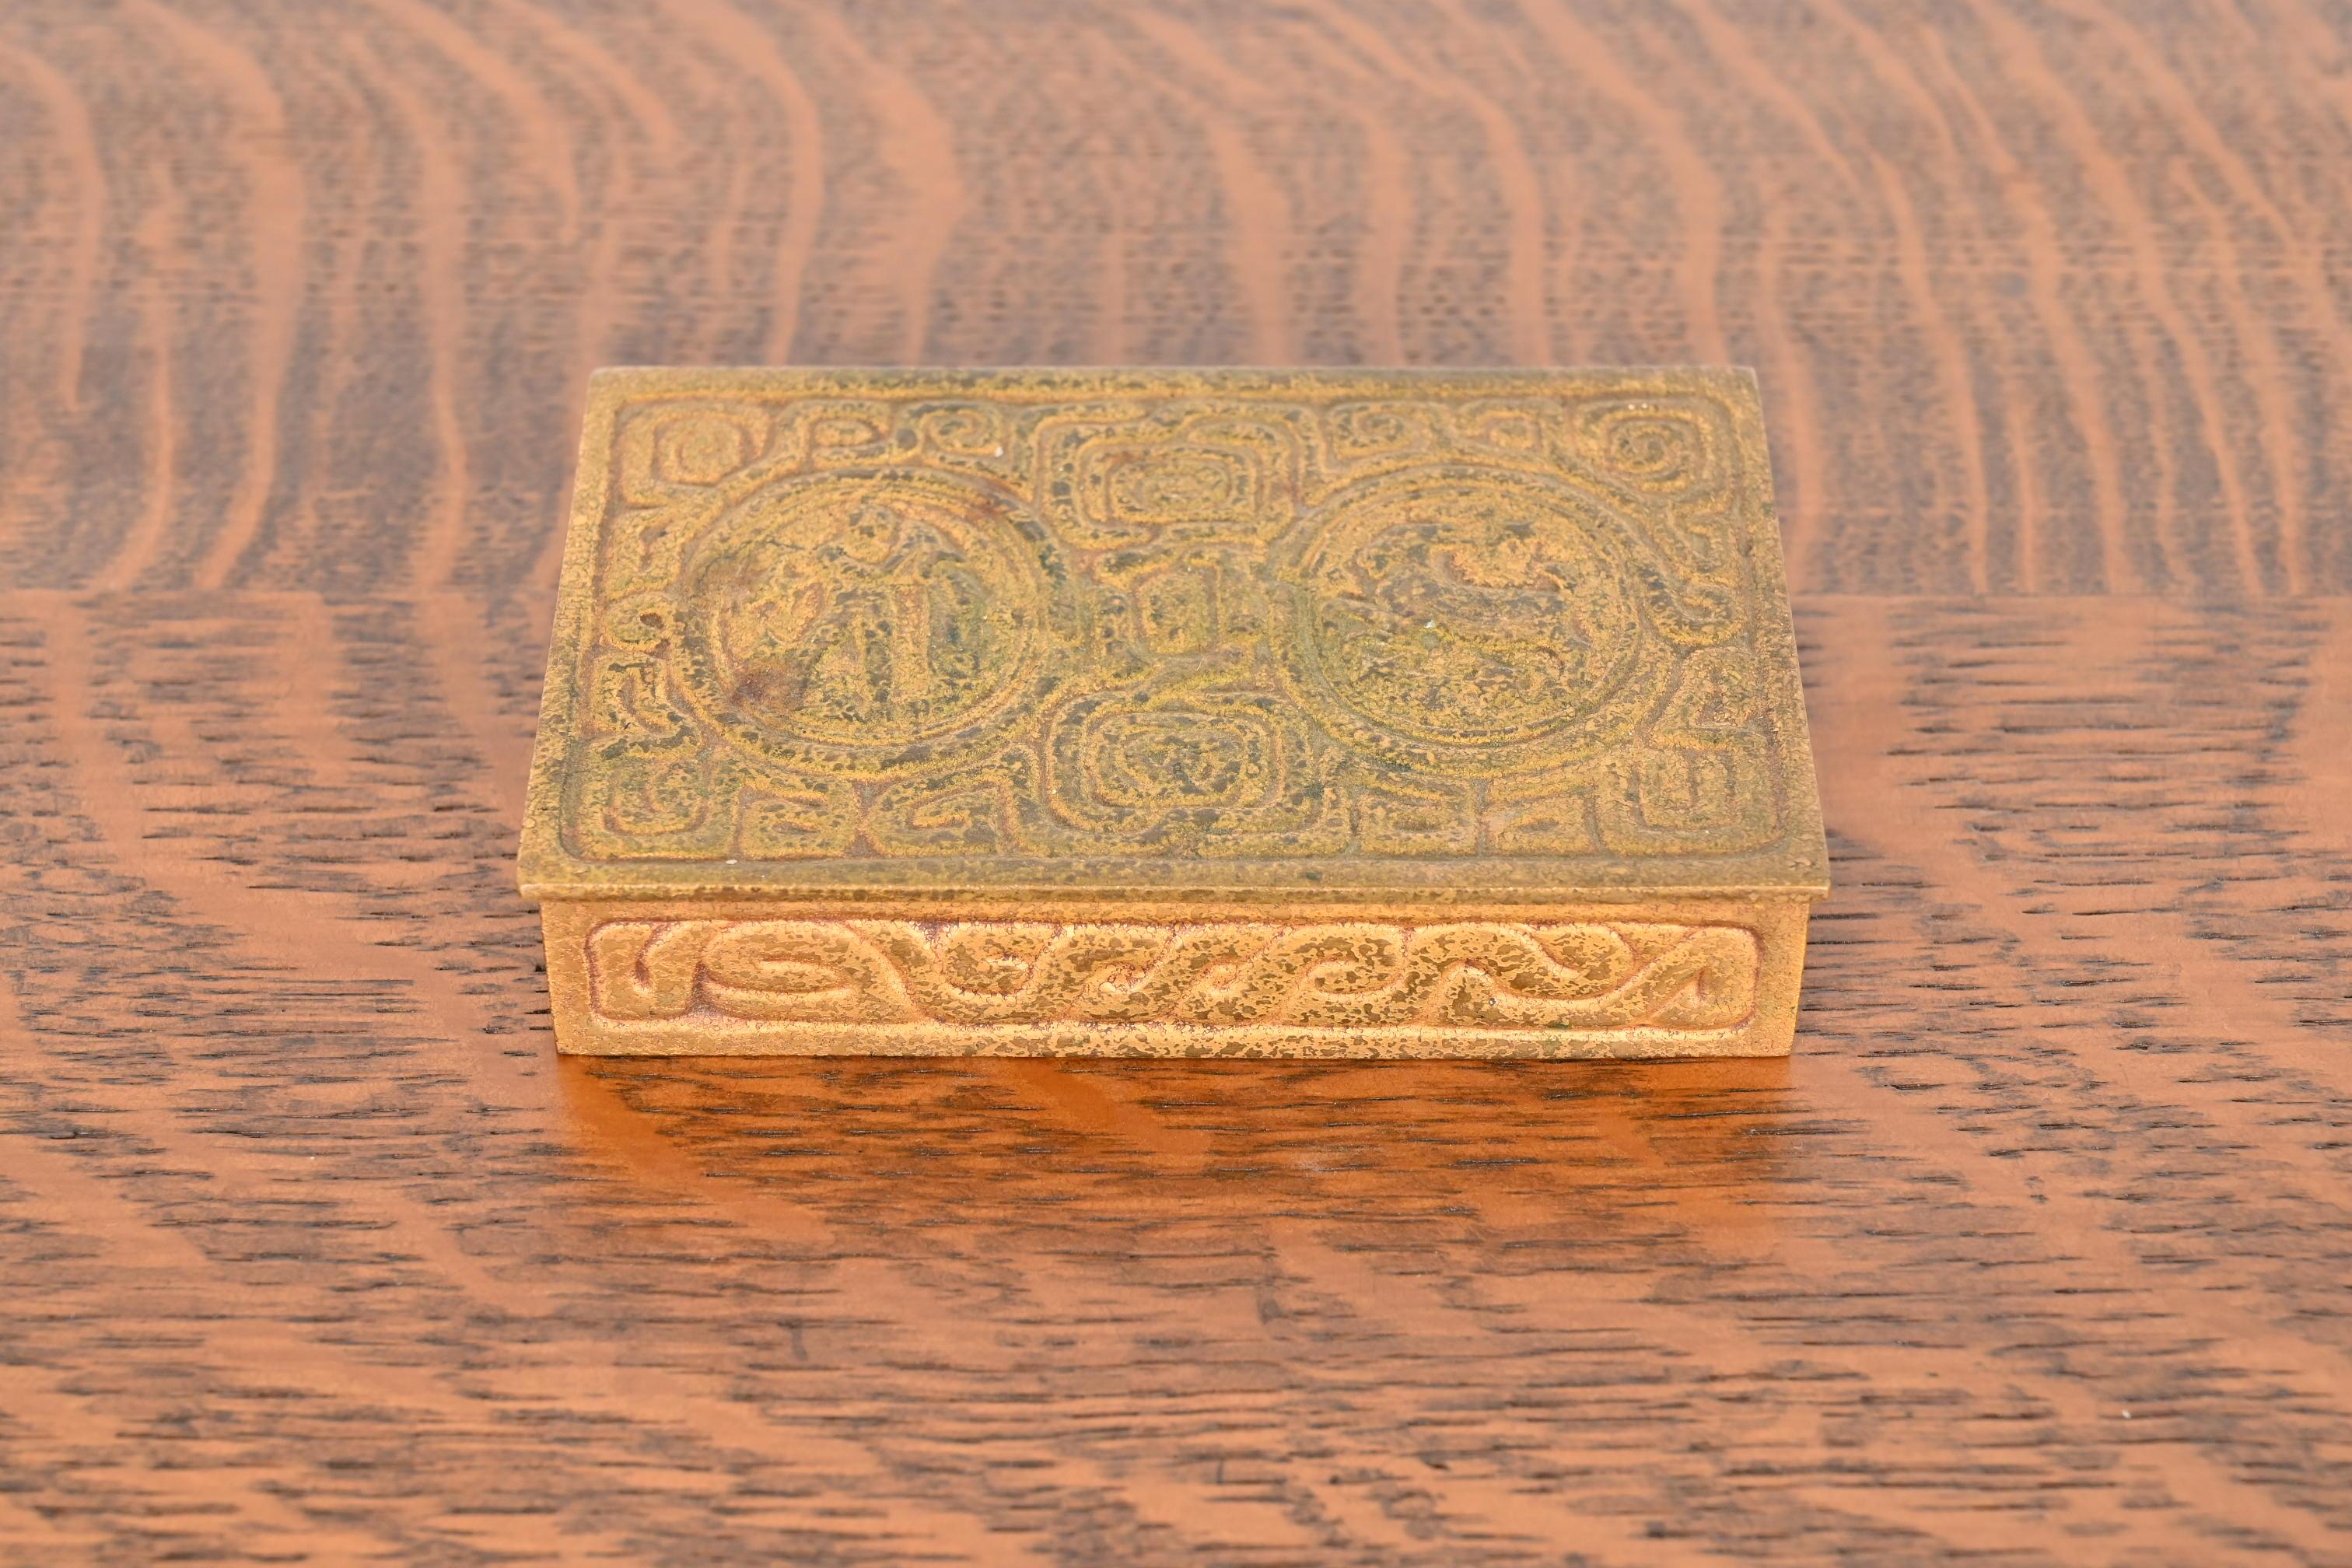 Ein wunderschönes Bronze-Doré-Schreibtischkästchen, Schmuckkästchen oder dekoratives Kästchen mit Zodiac-Motiven

Von Tiffany Studios

New York, USA, Anfang des 20. Jahrhunderts

Maße: 5,38 